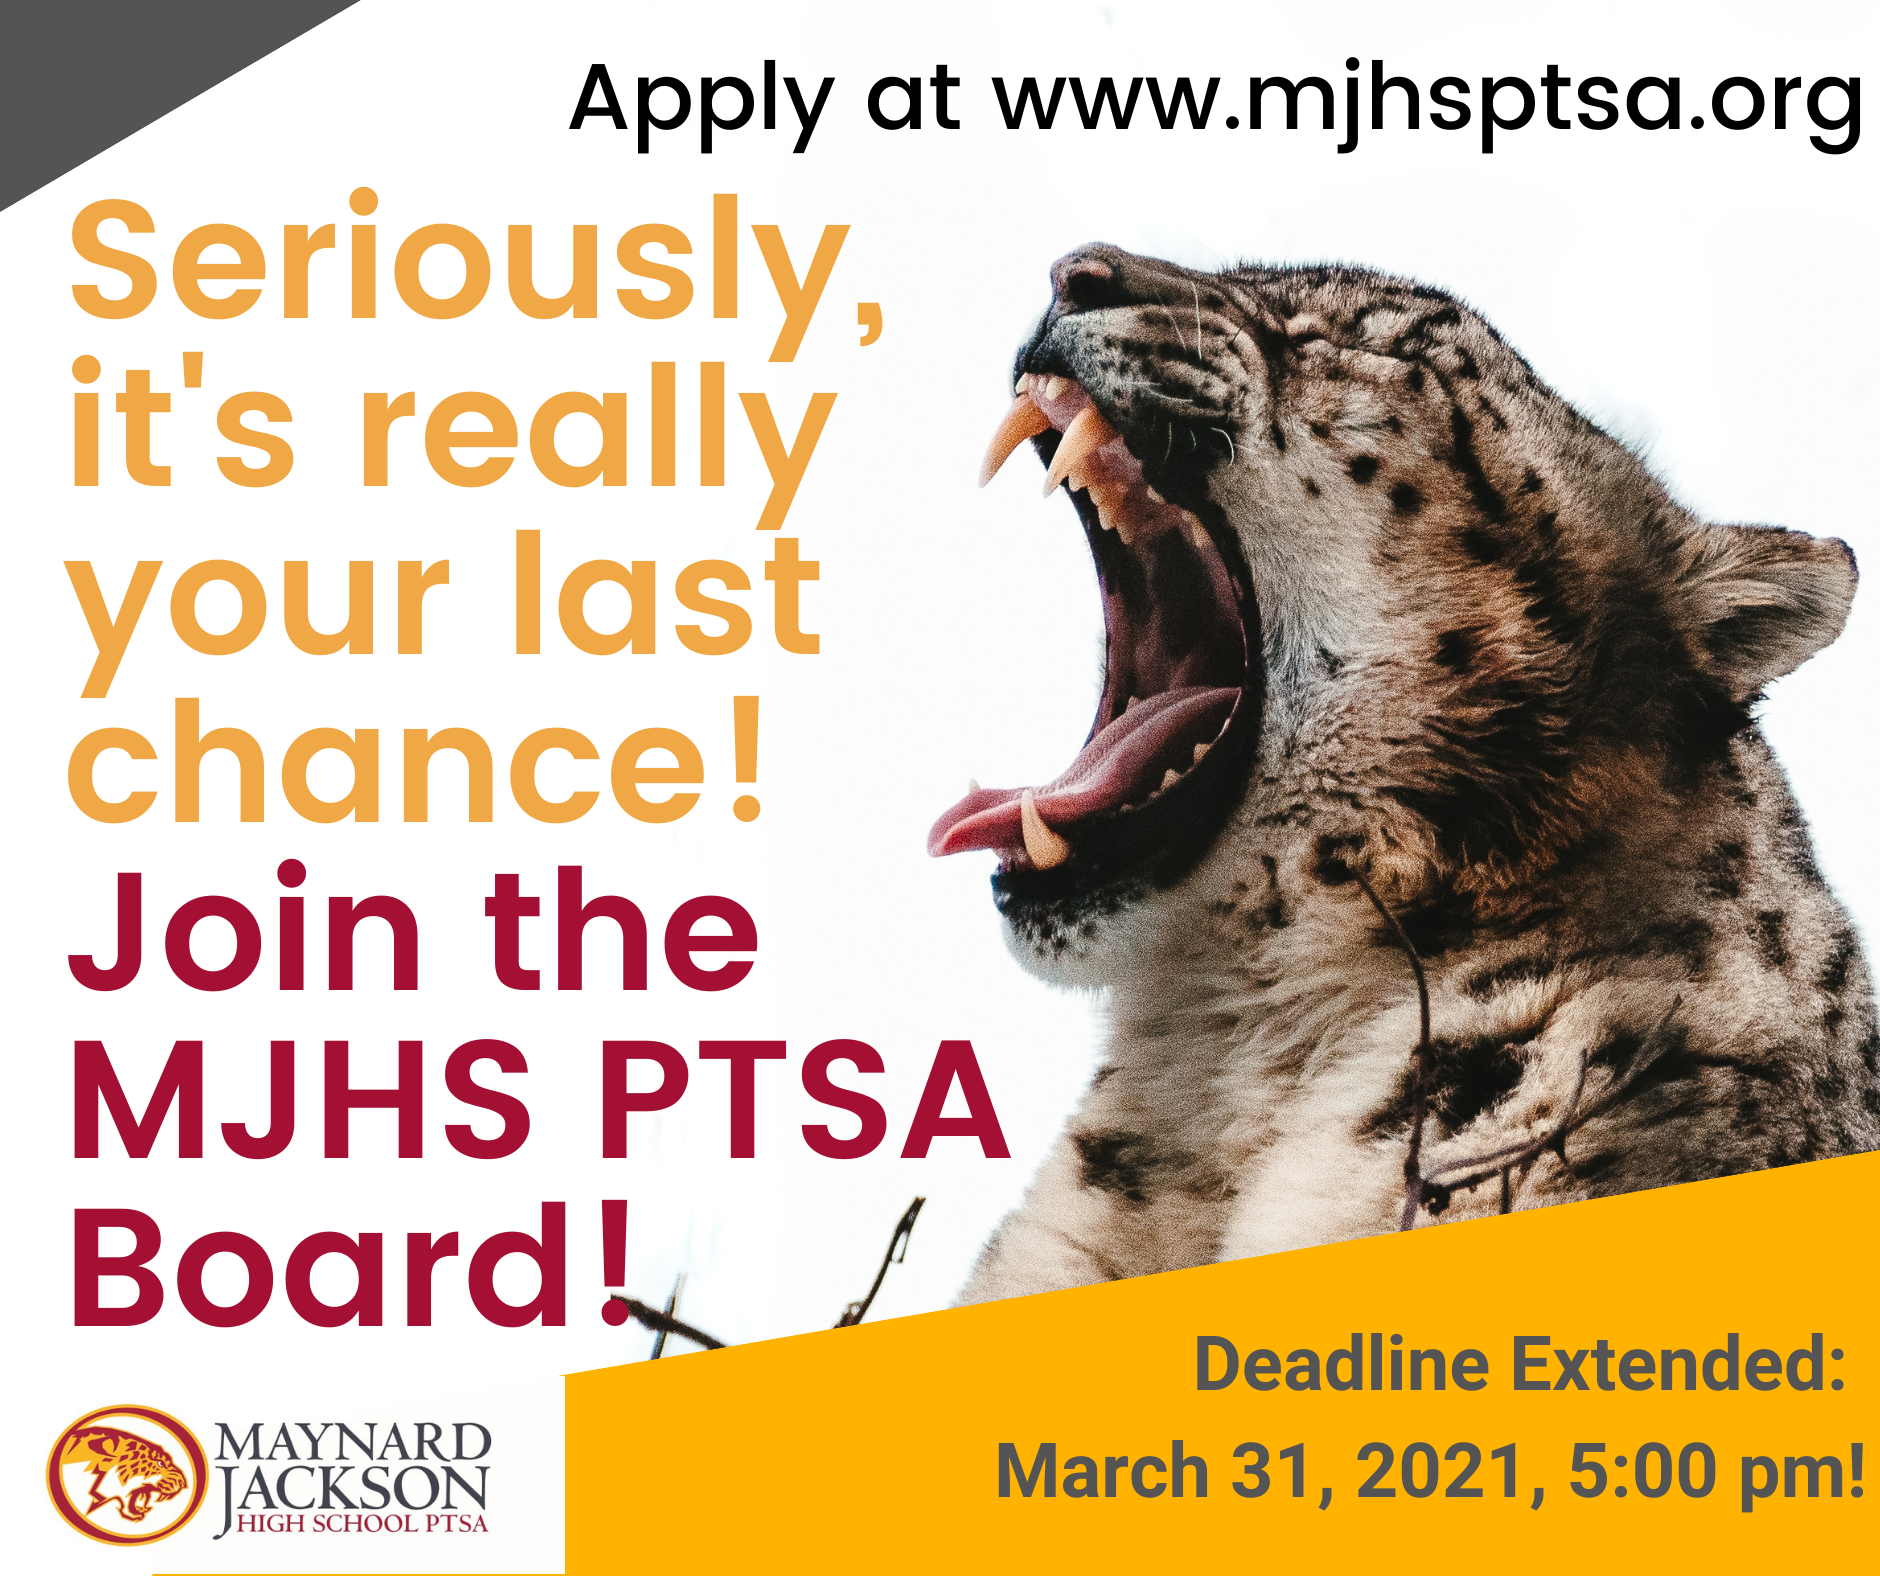 Become a MJHS PTSA Board Member! Deadline is March 31